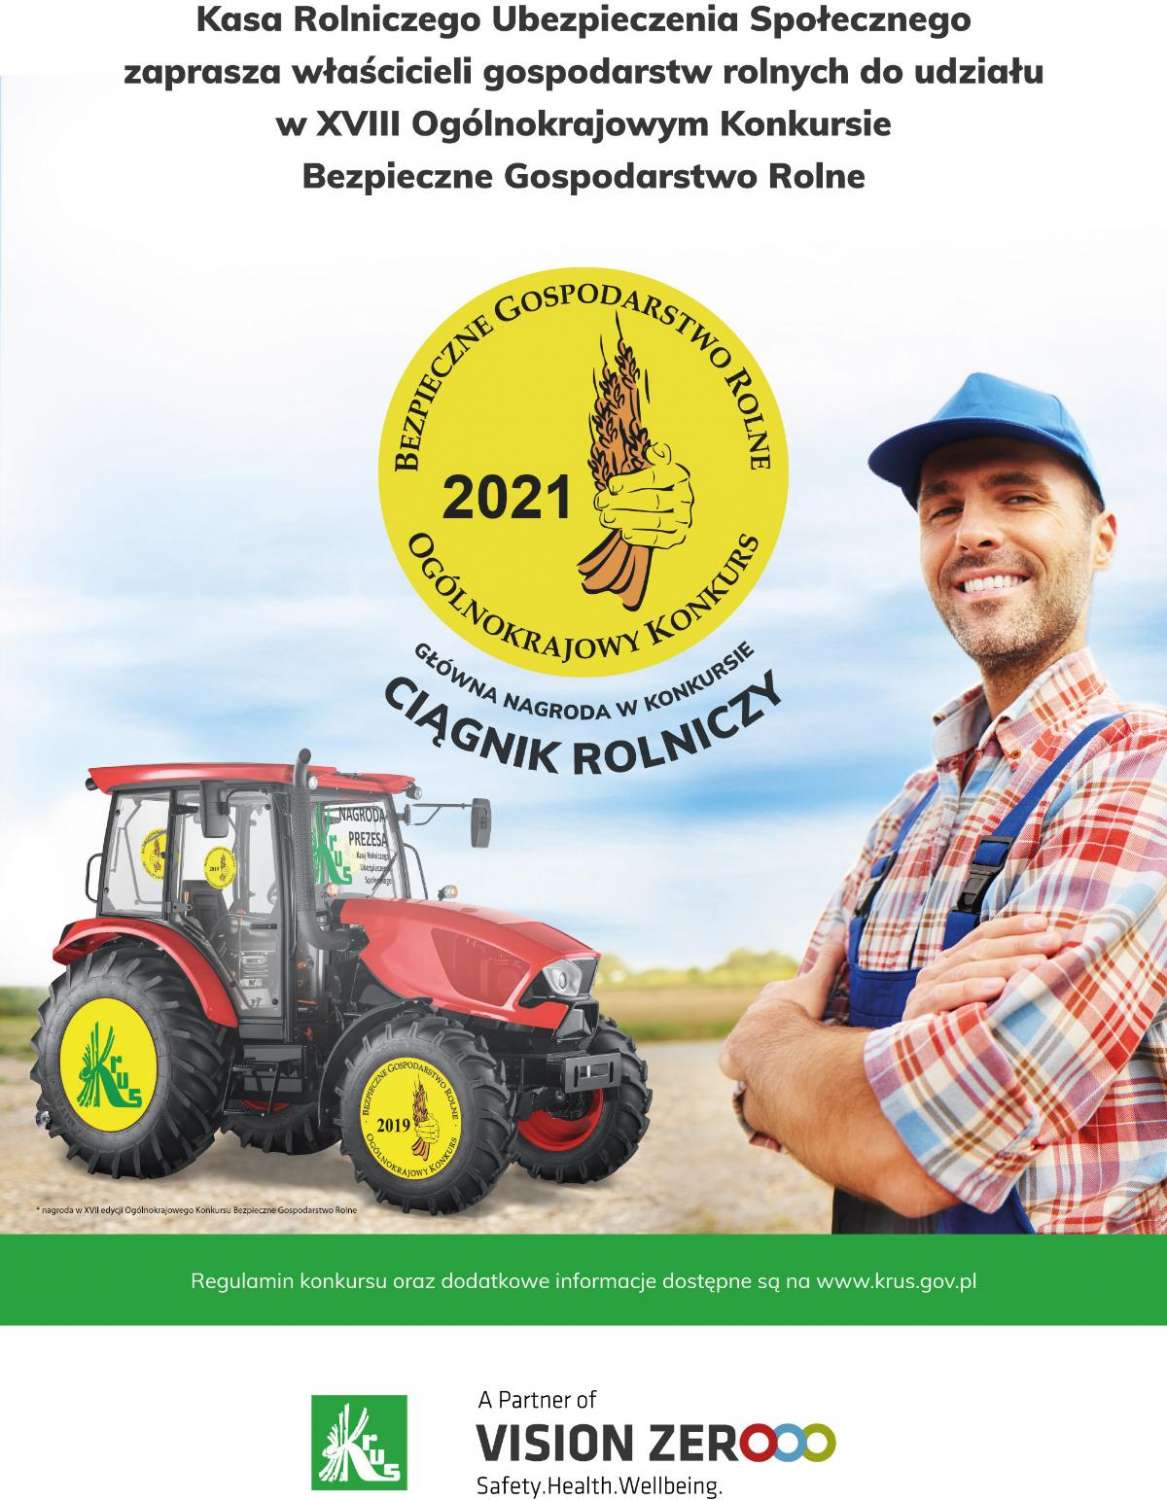 Konkurs KRUS "Bezpieczne Gospodarstwo Rolne 2021"